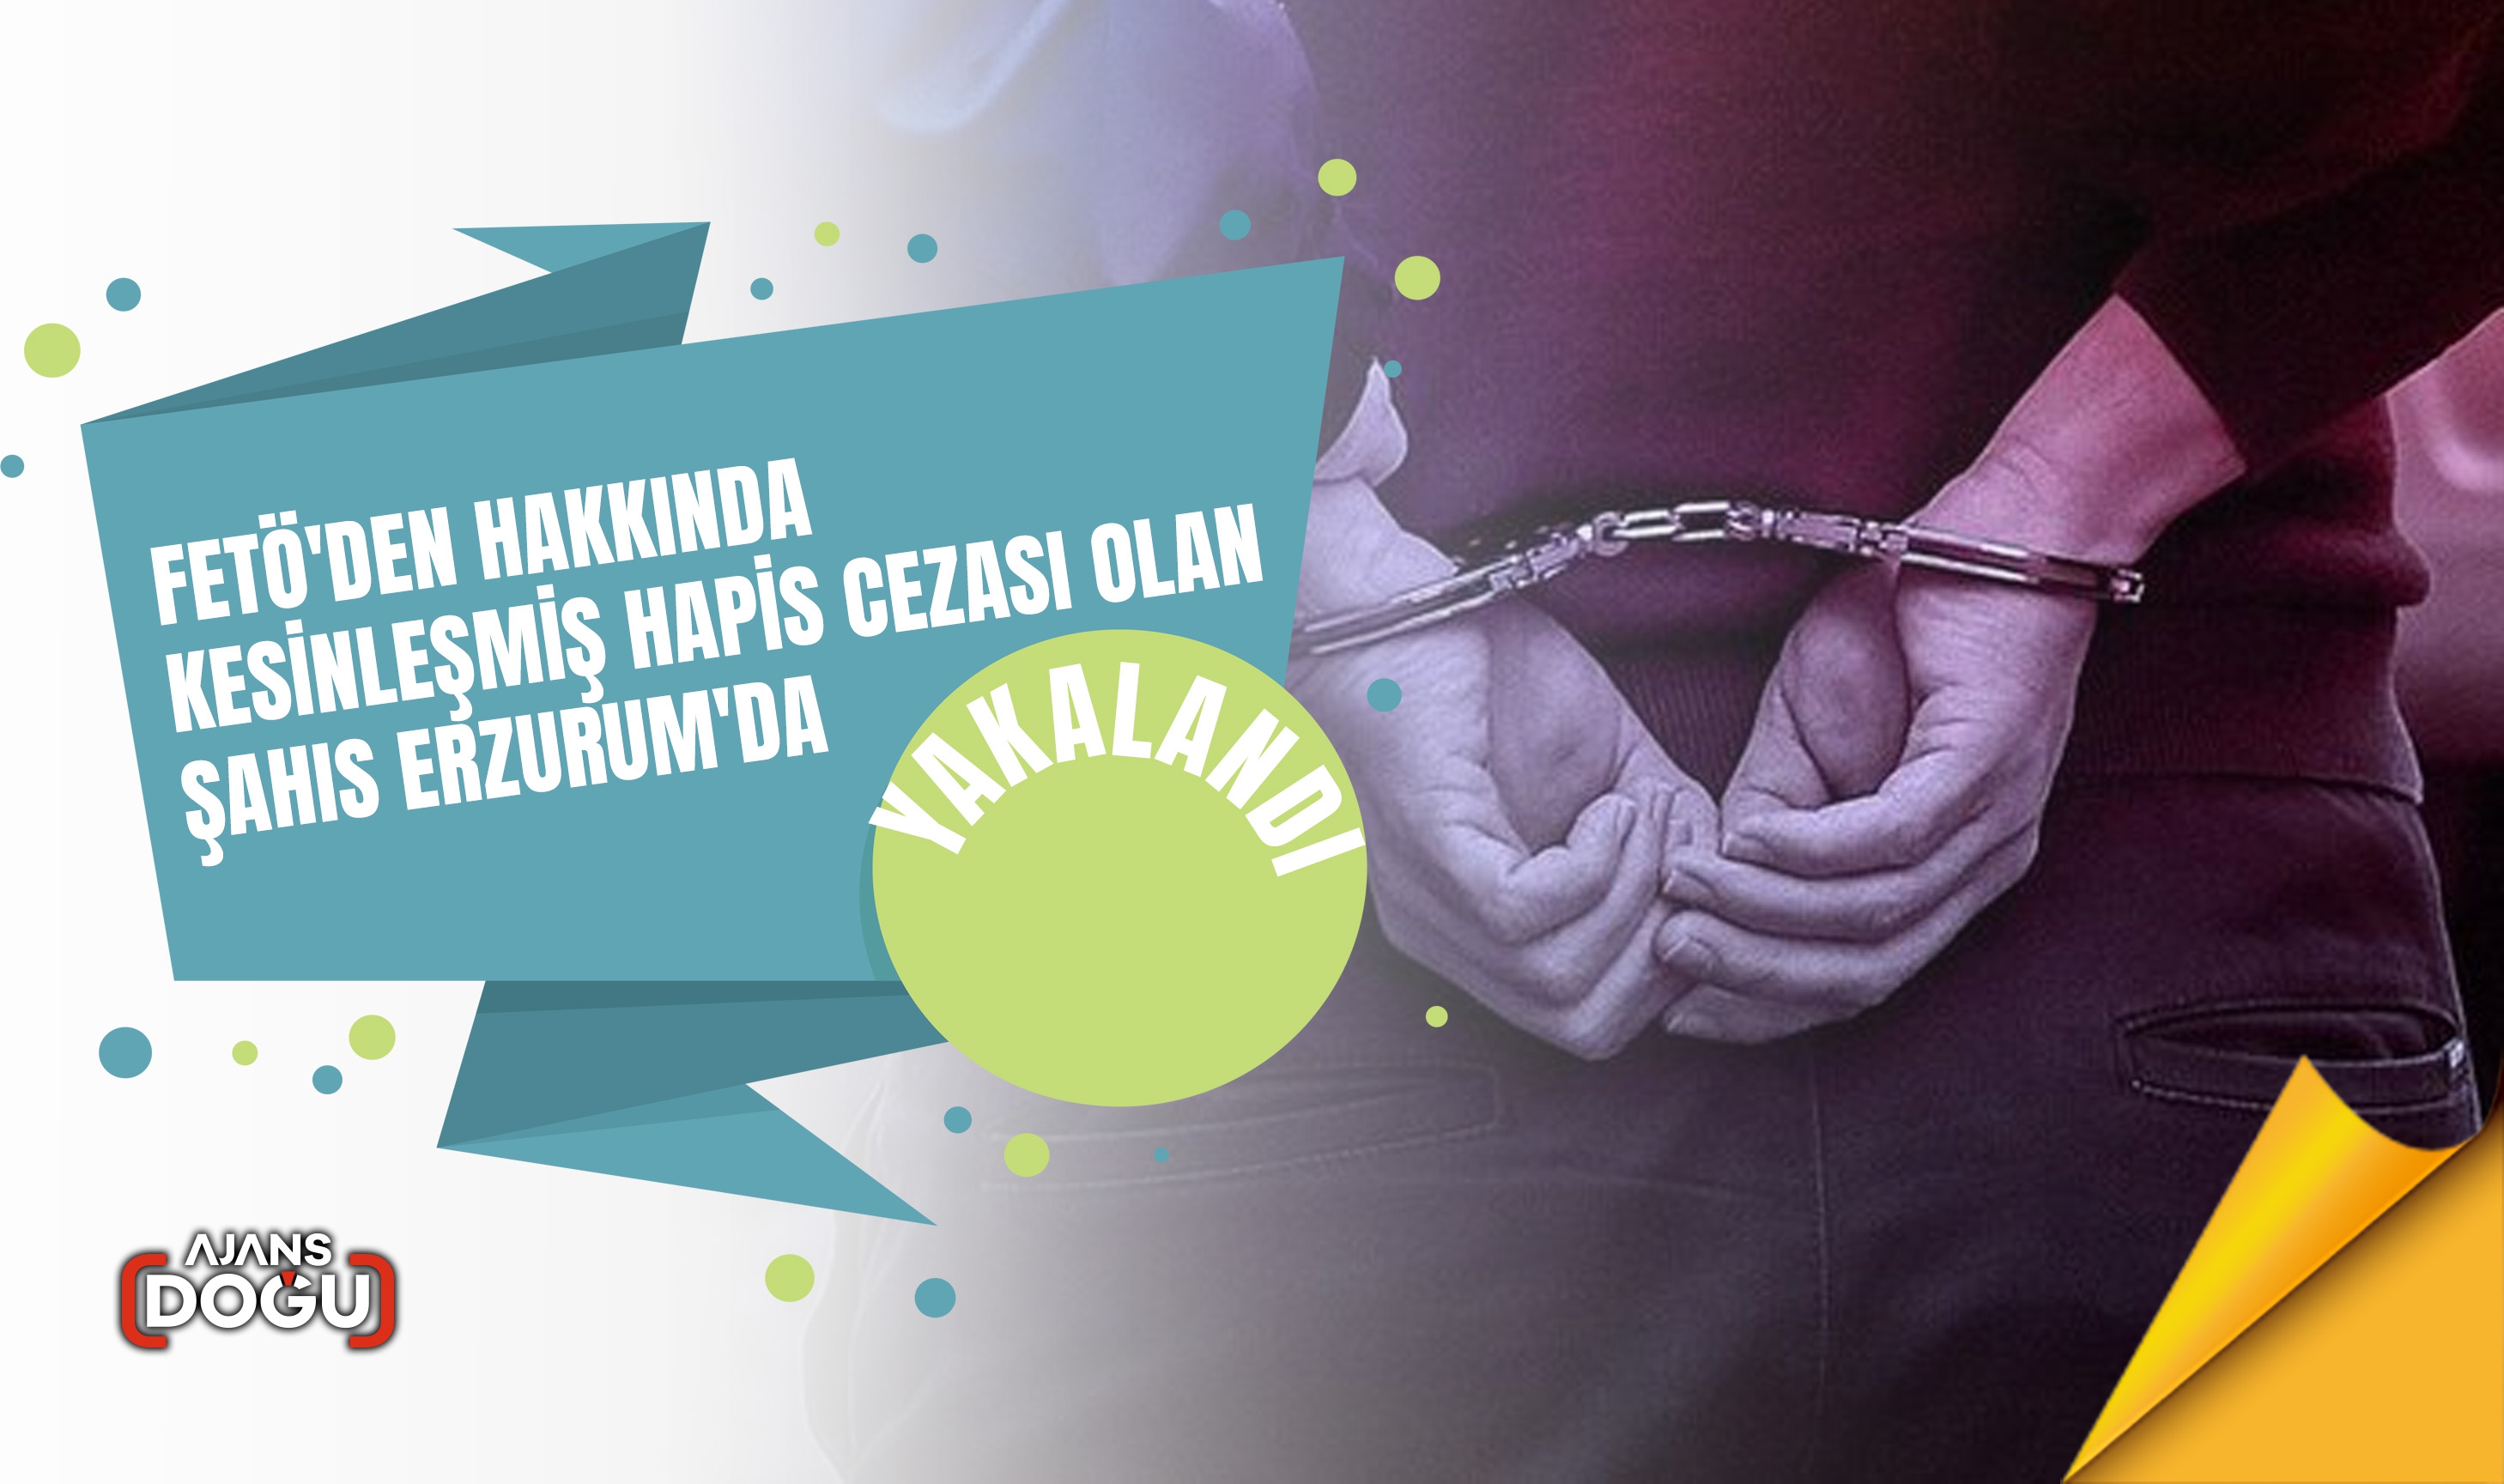 FETÖ'den hakkında kesinleşmiş hapis cezası olan şahıs Erzurum'da yakalandı